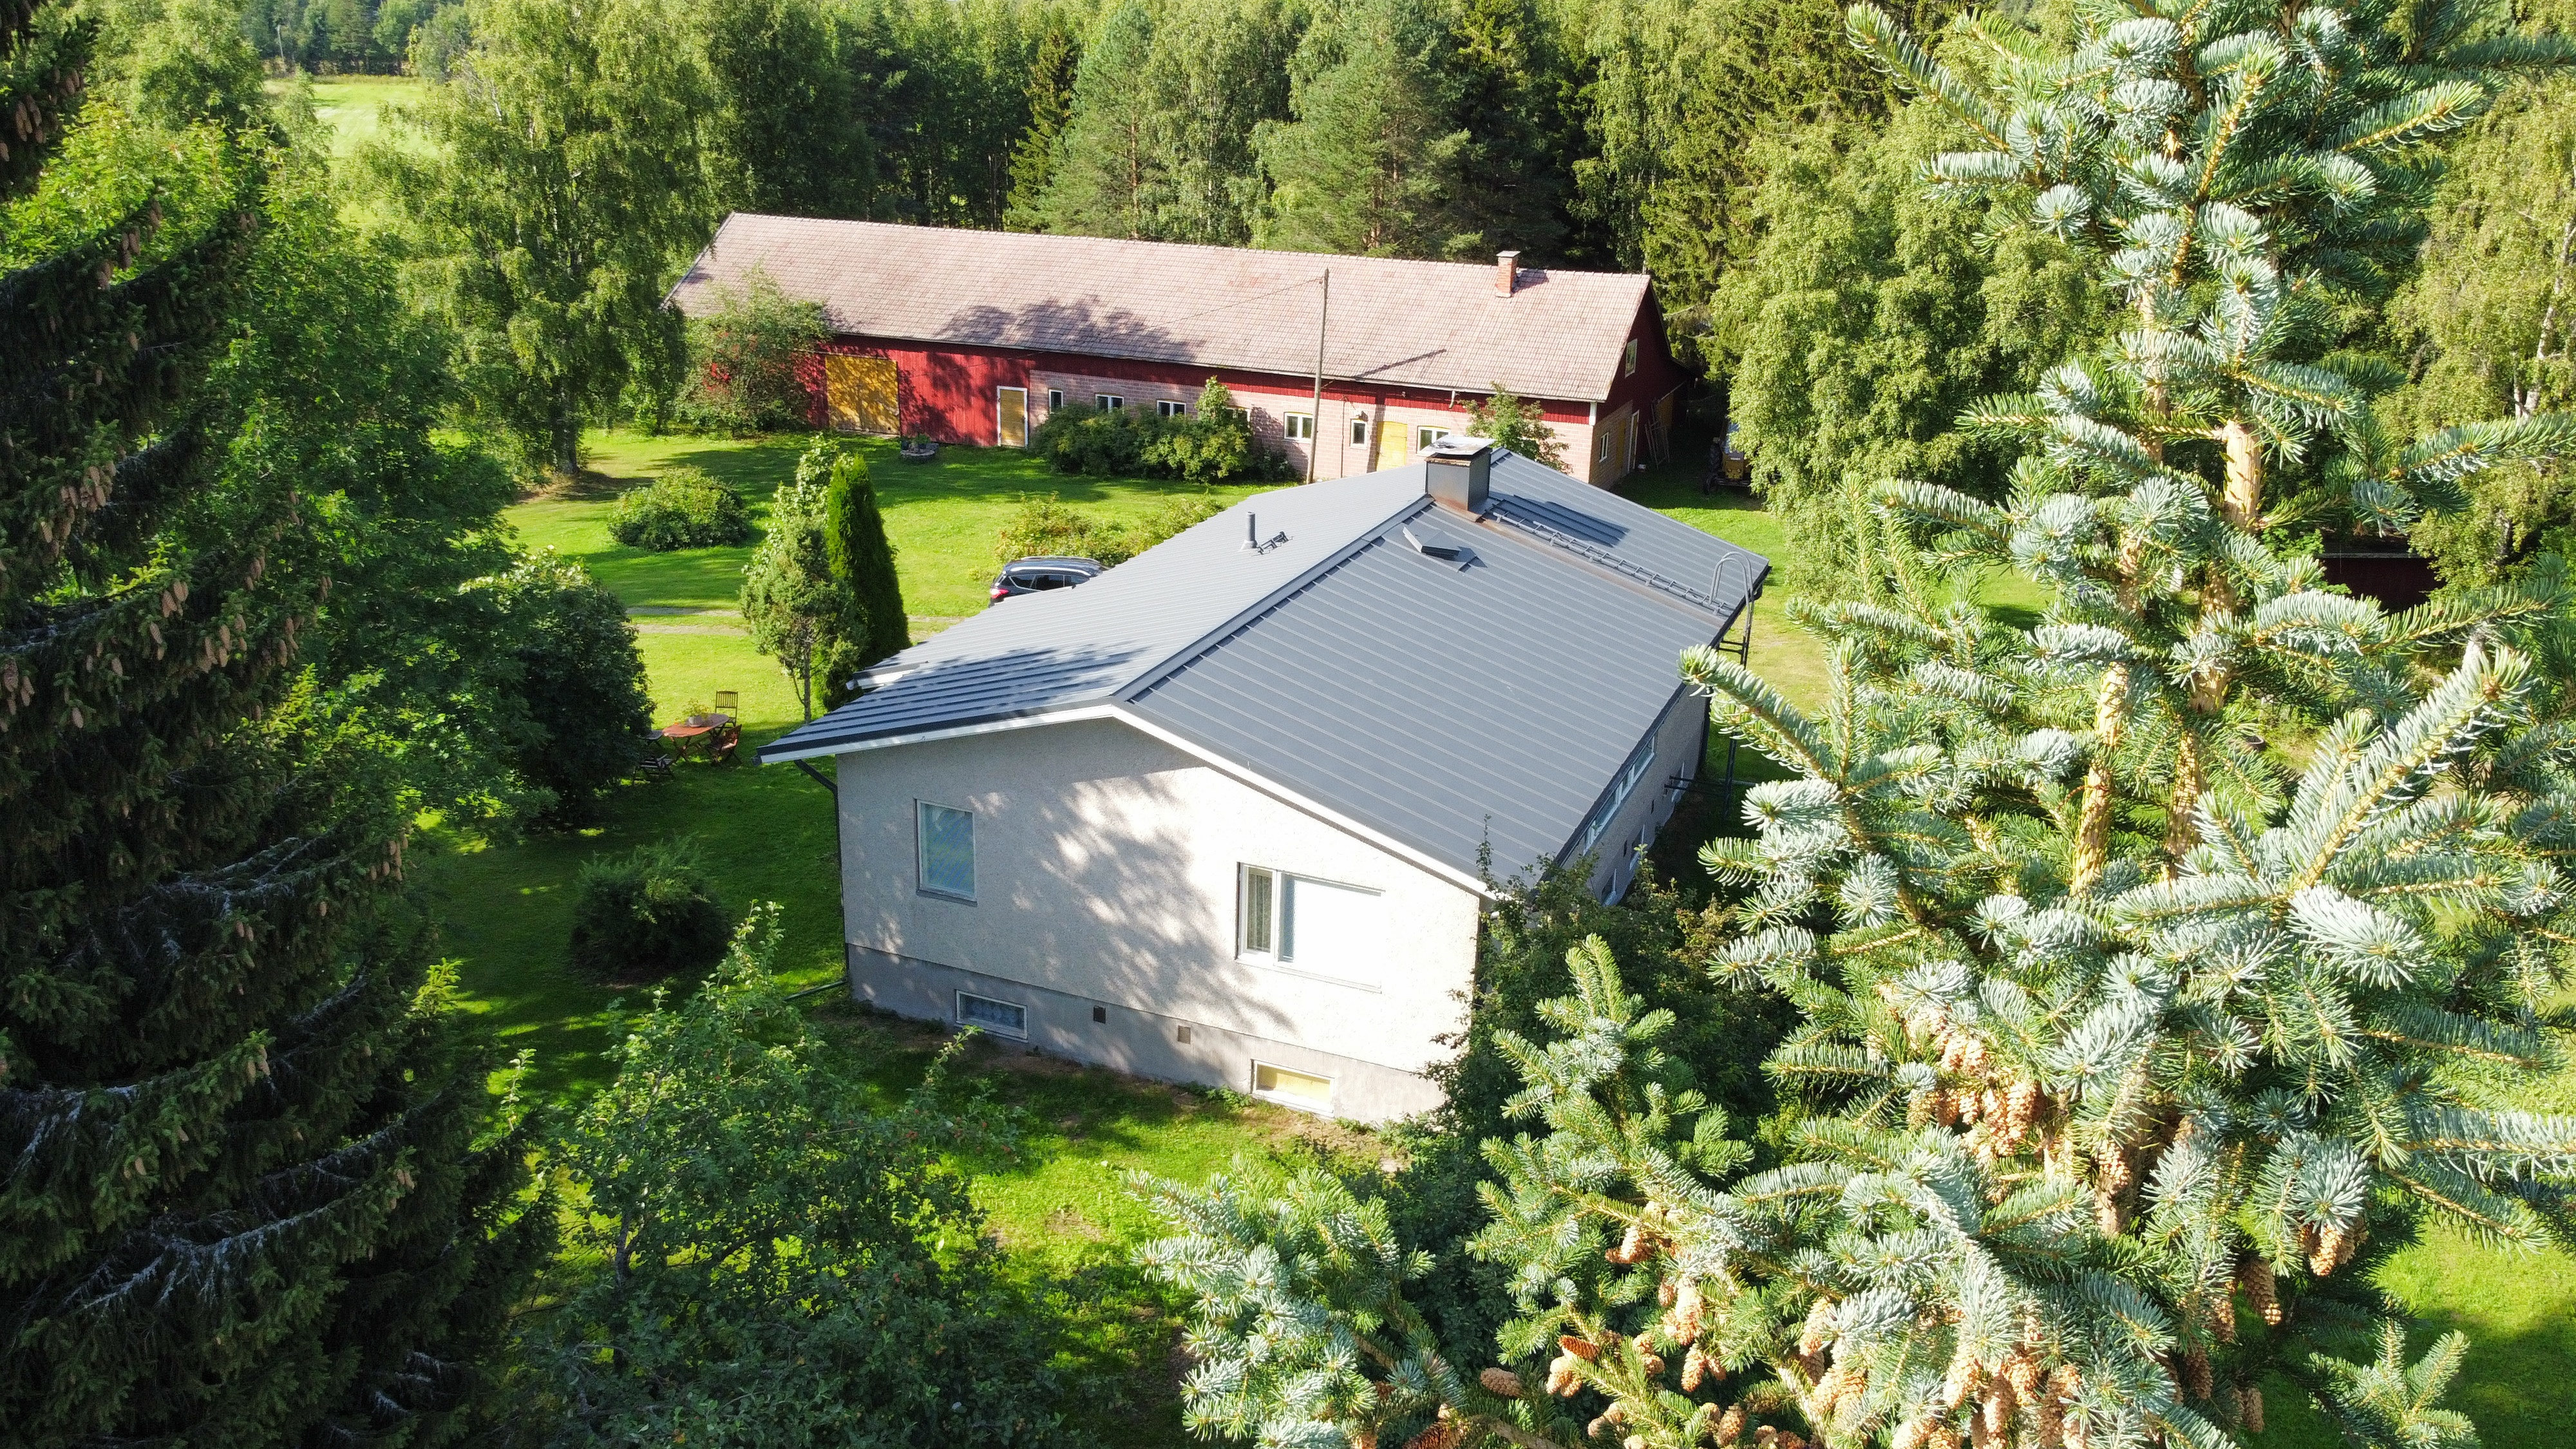 Marjulan talo on vuokrattava omakotitalo joka sijaitsee noin 10 km Kokkolan keskustasta.